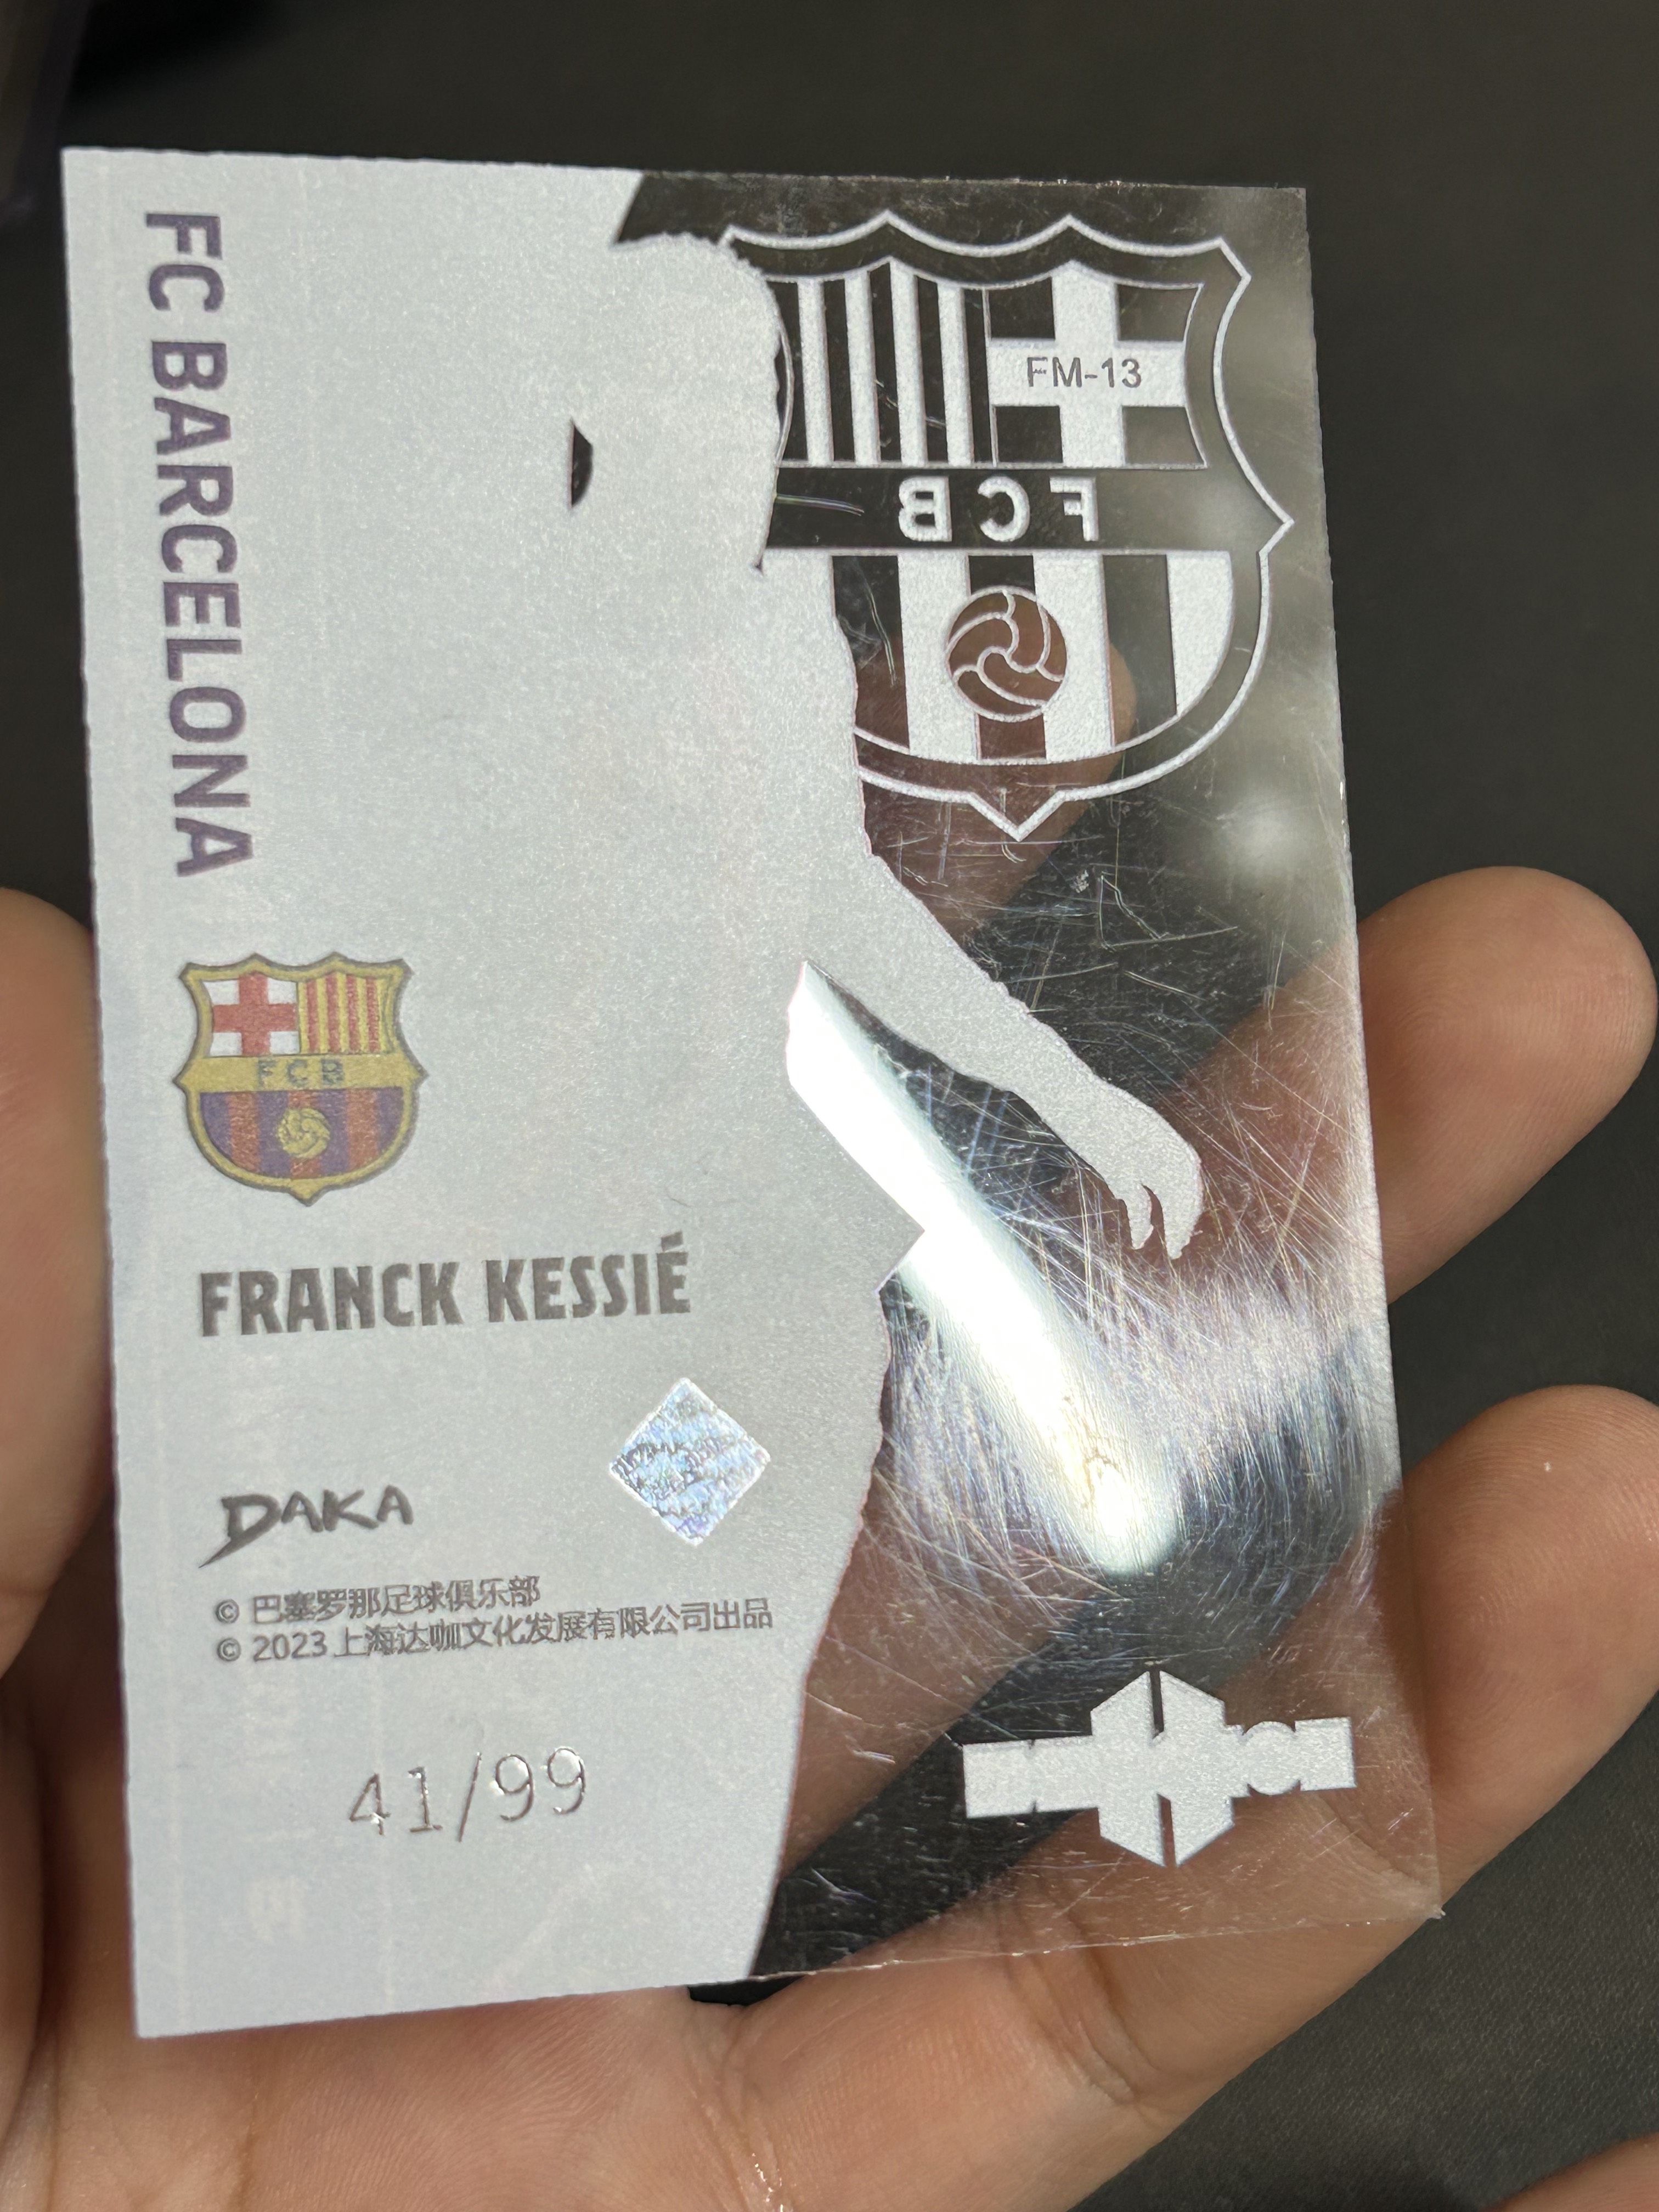 『BGC卡藏』2022-23 Daka 达咖 Barcelona 巴塞罗那 Holocene Franck Kessie 凯西 胶片特卡 41/99 卡品如图 justin